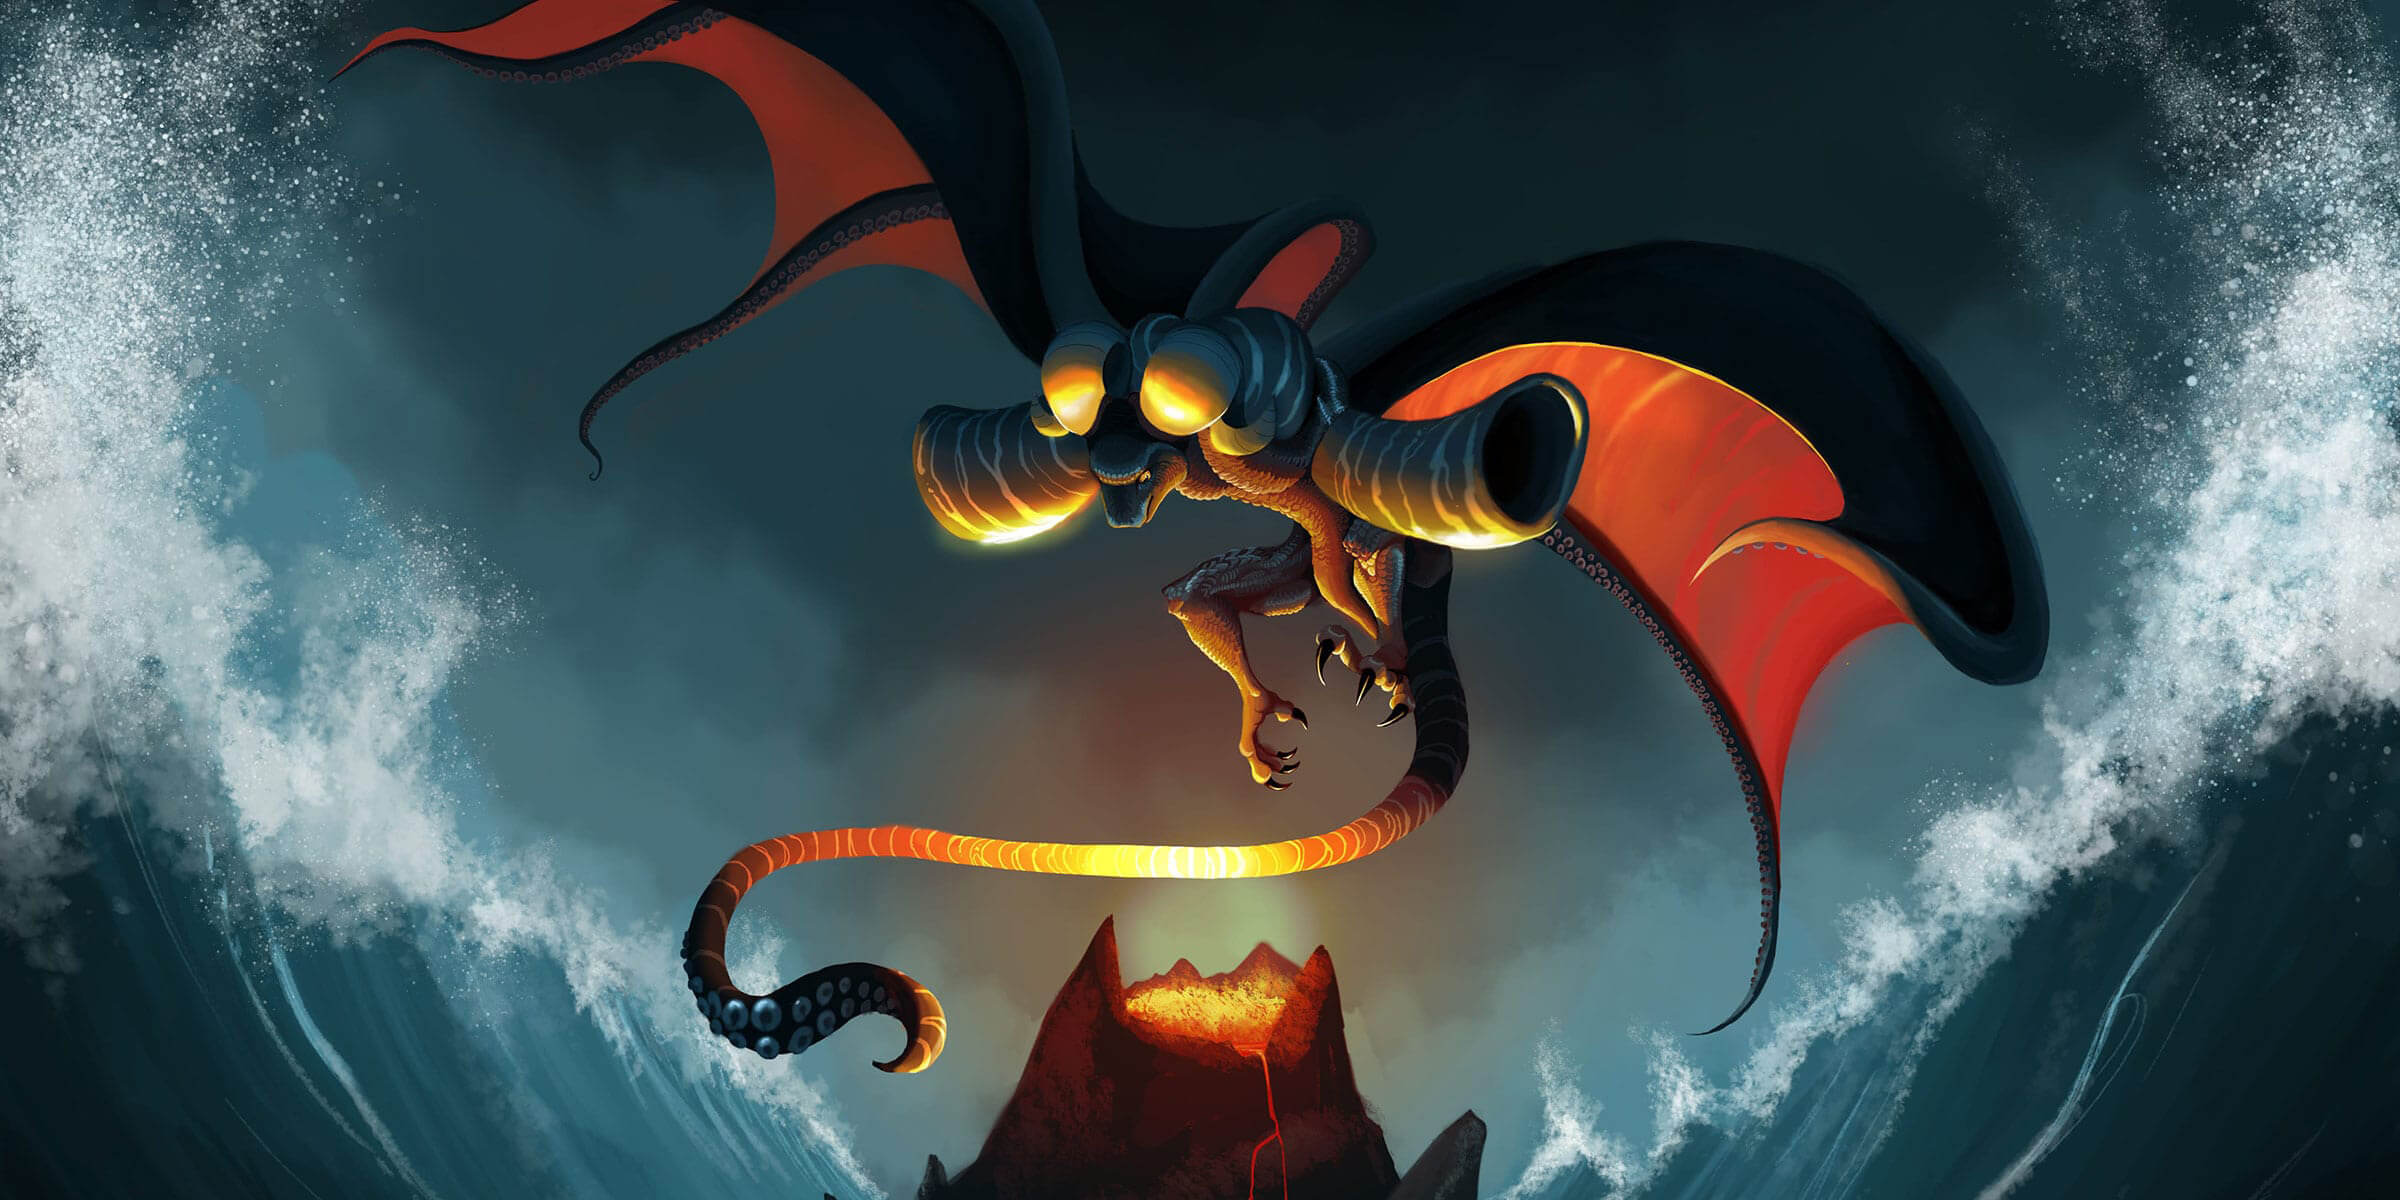 Una criatura mezcla de dragon y pulpo sobrevuela un volcán mientras olas gigantes arremeten contra la montaña